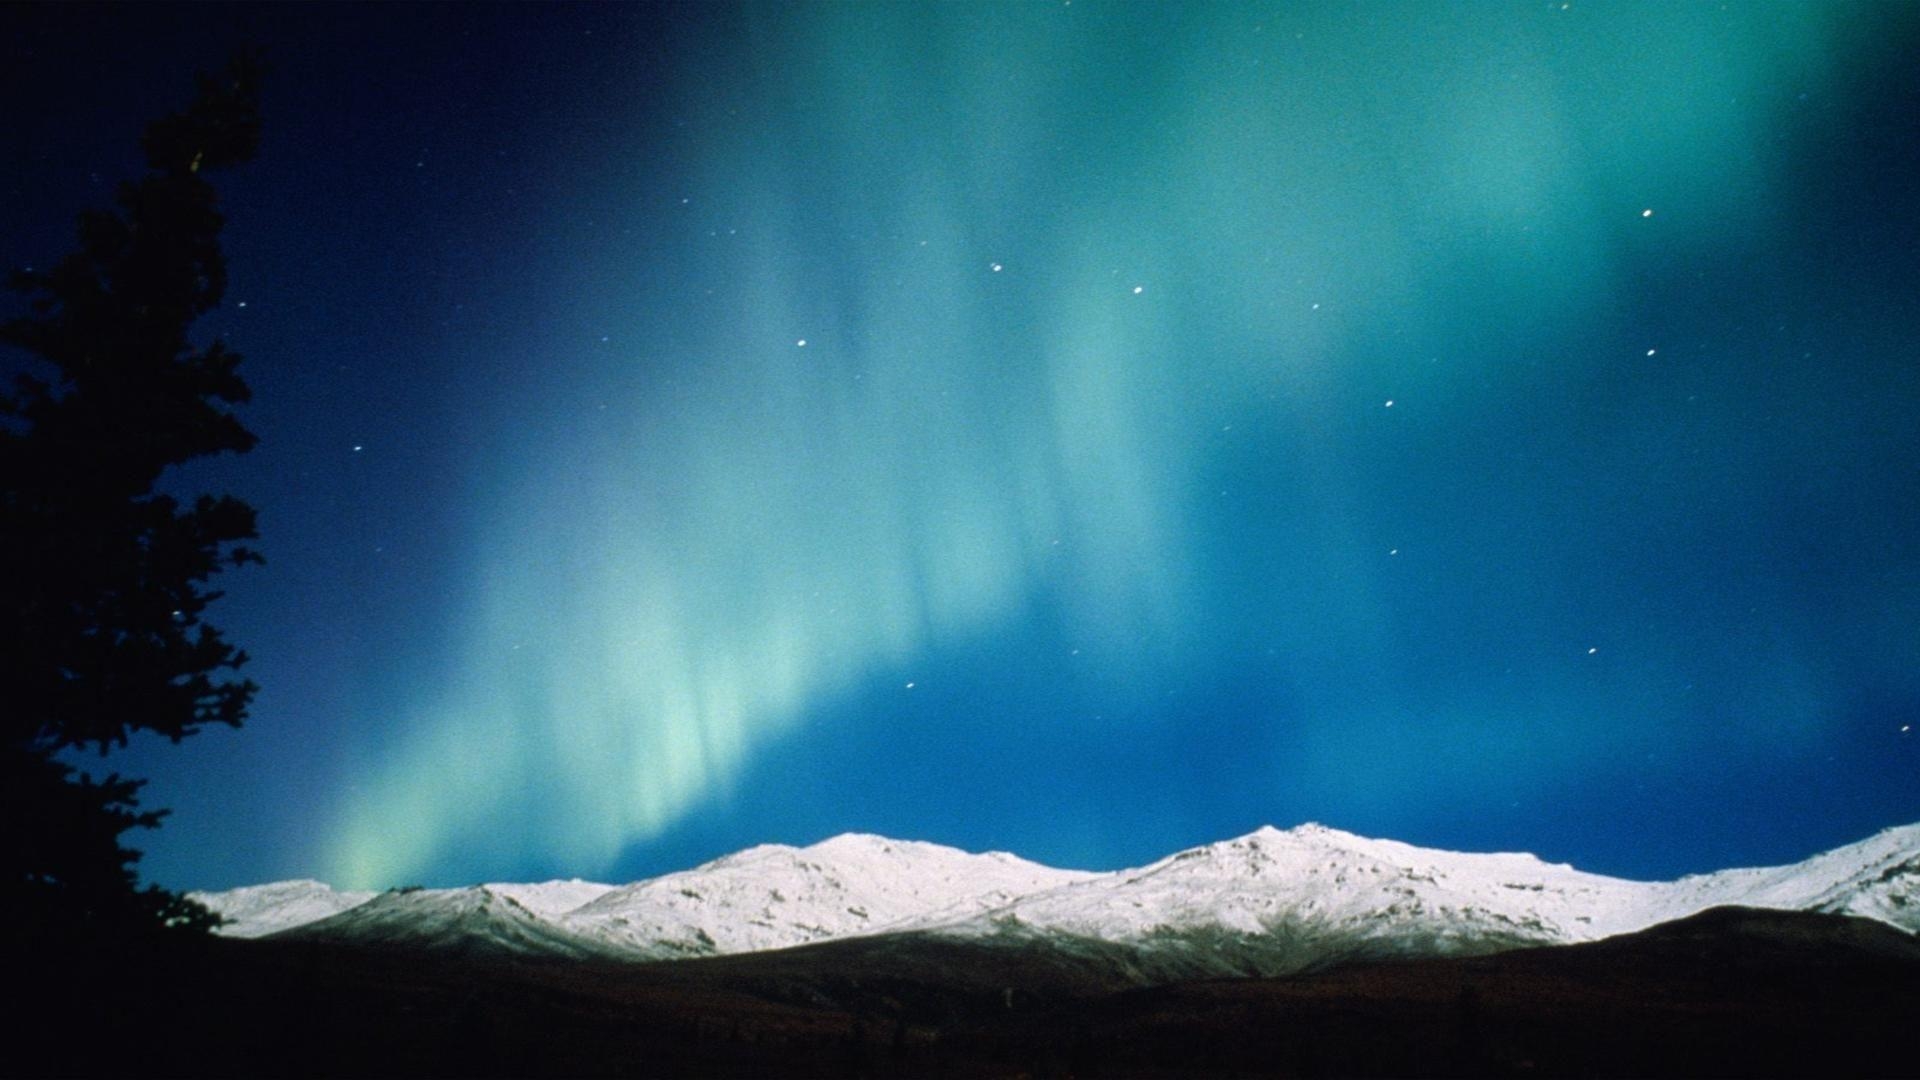 44+] Alaska Northern Lights Wallpaper